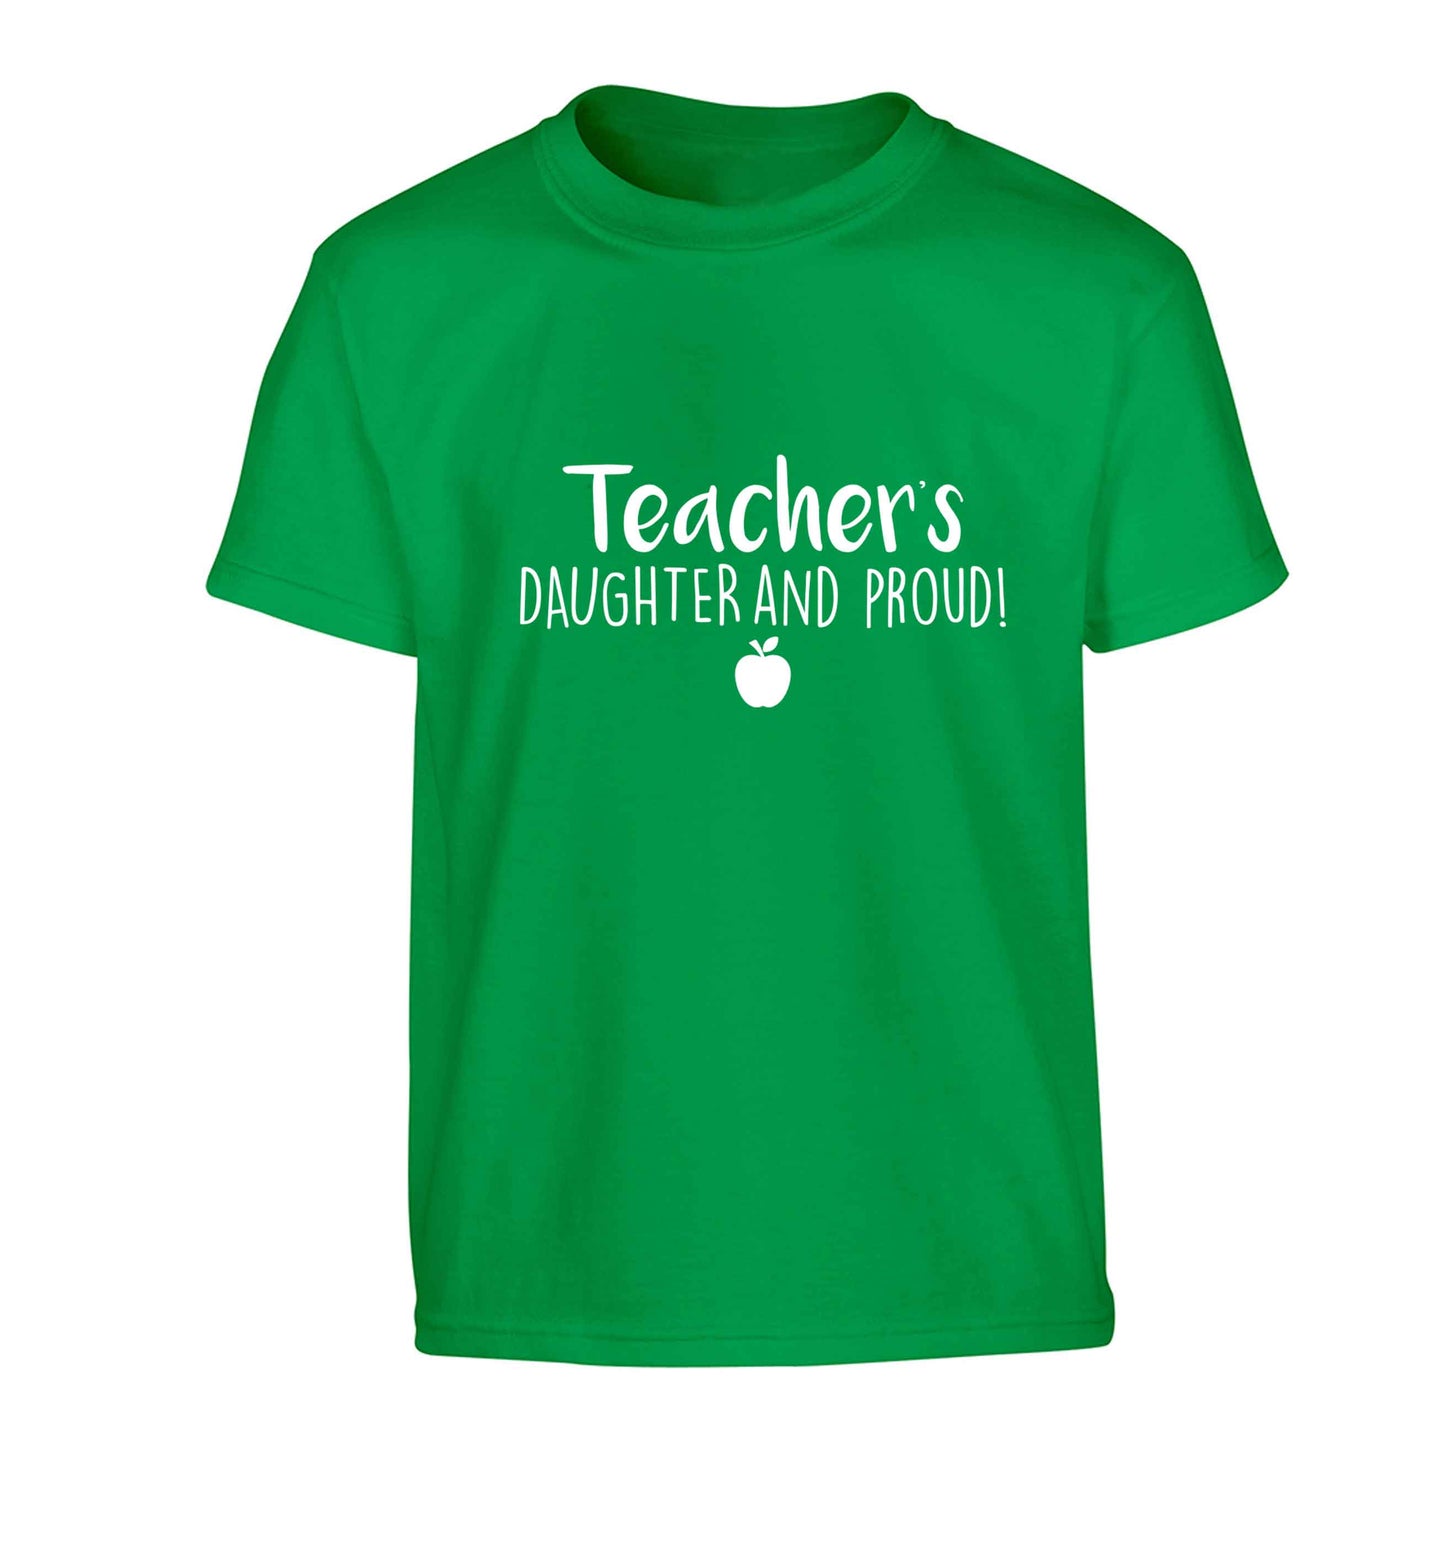 Teachers daughter and proud Children's green Tshirt 12-13 Years